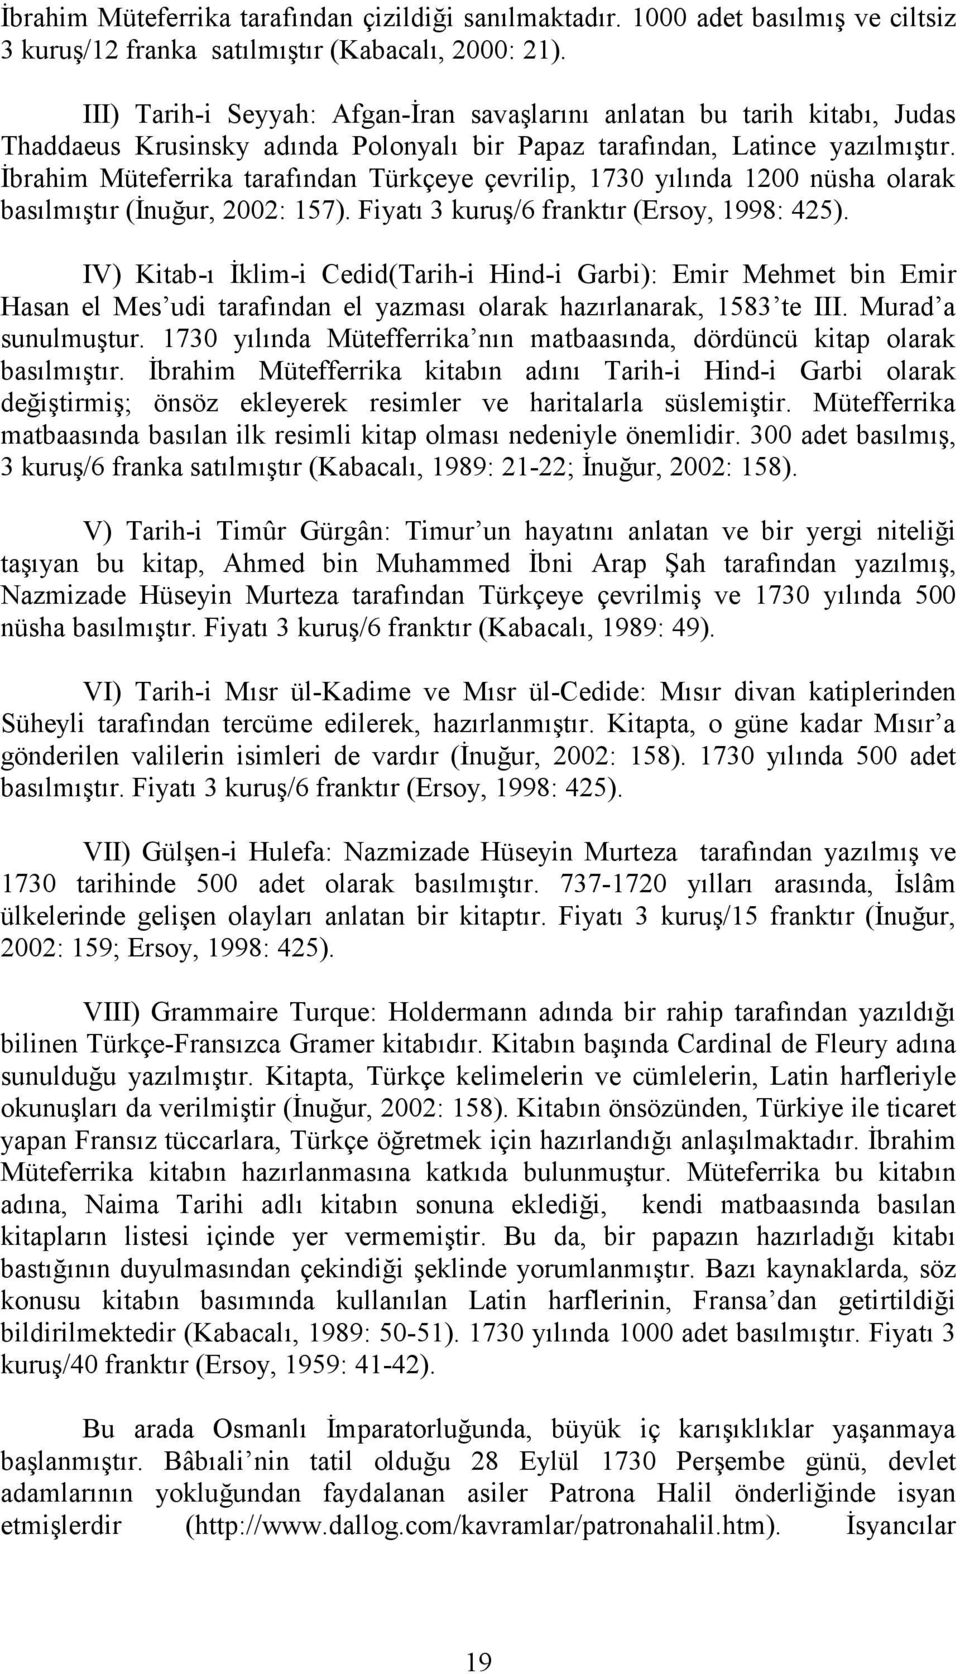 İbrahim Müteferrika tarafından Türkçeye çevrilip, 1730 yılında 1200 nüsha olarak basılmıştır (İnuğur, 2002: 157). Fiyatı 3 kuruş/6 franktır (Ersoy, 1998: 425).